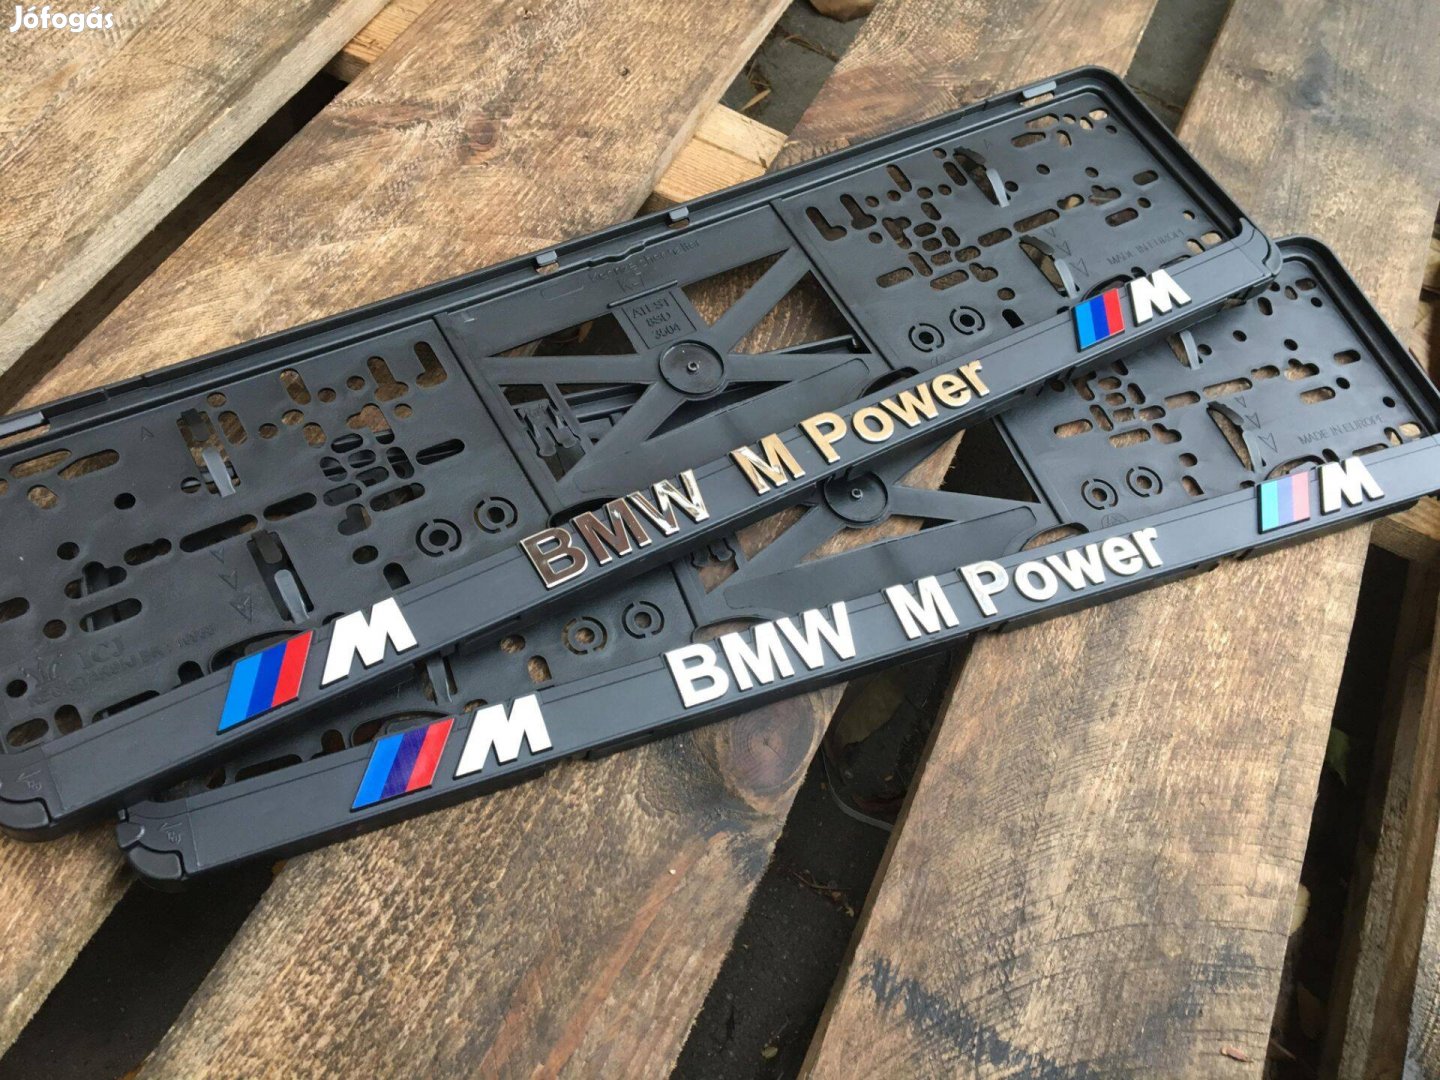 BMW M Power rendszámtábla keret